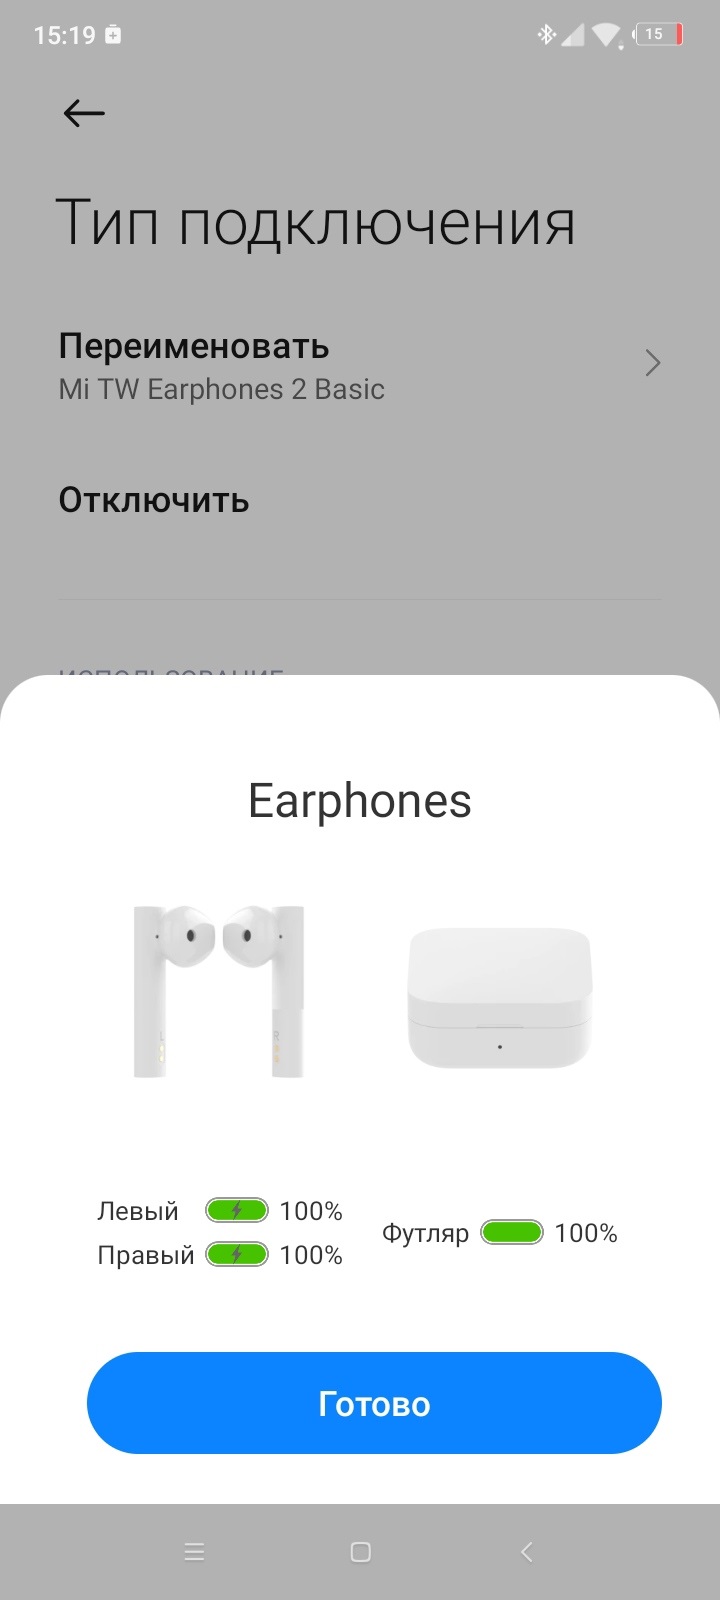 Обзор TWS наушников Xiaomi Mi True Wireless Earphones 2 Basic